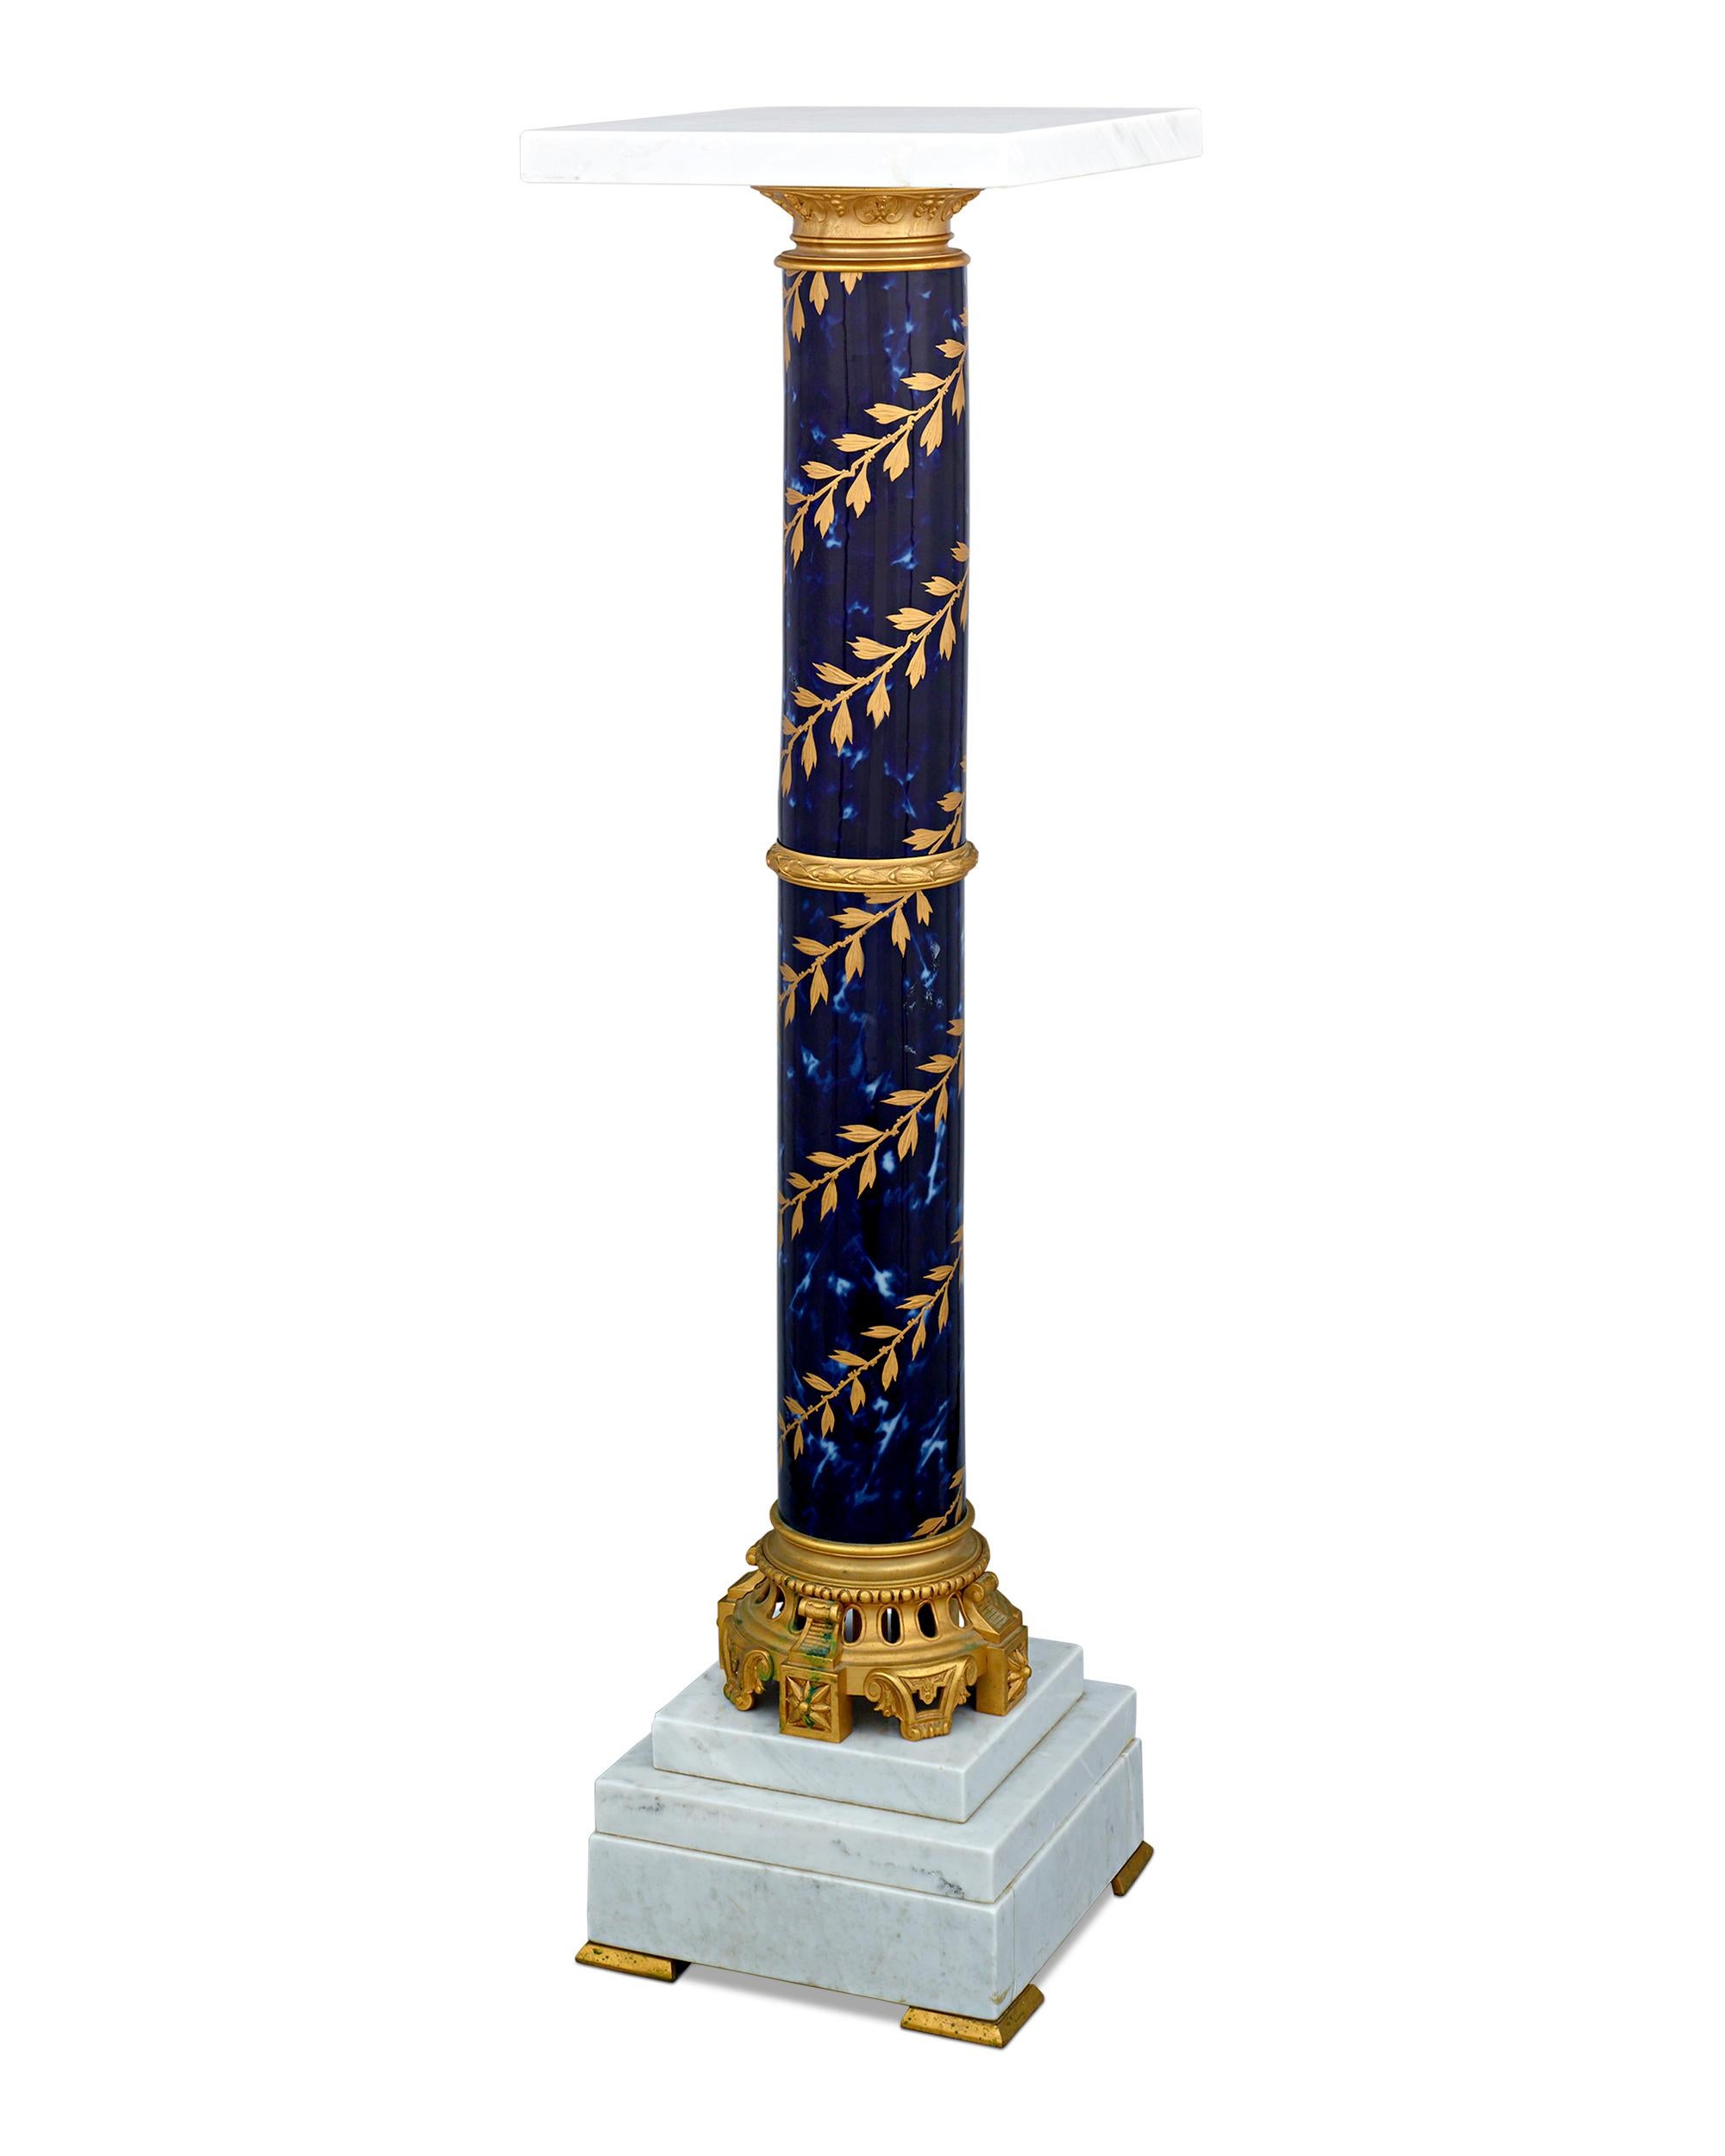 Dieser Sockel zeigt den Stil und die Anmut der berühmten Porzellanmanufaktur von Sèvres. Der schimmernde, tiefblaue Porzellansockel im klassischen Sèvres-Stil bildet den perfekten Hintergrund für das filigrane, vergoldete neoklassizistische Motiv,